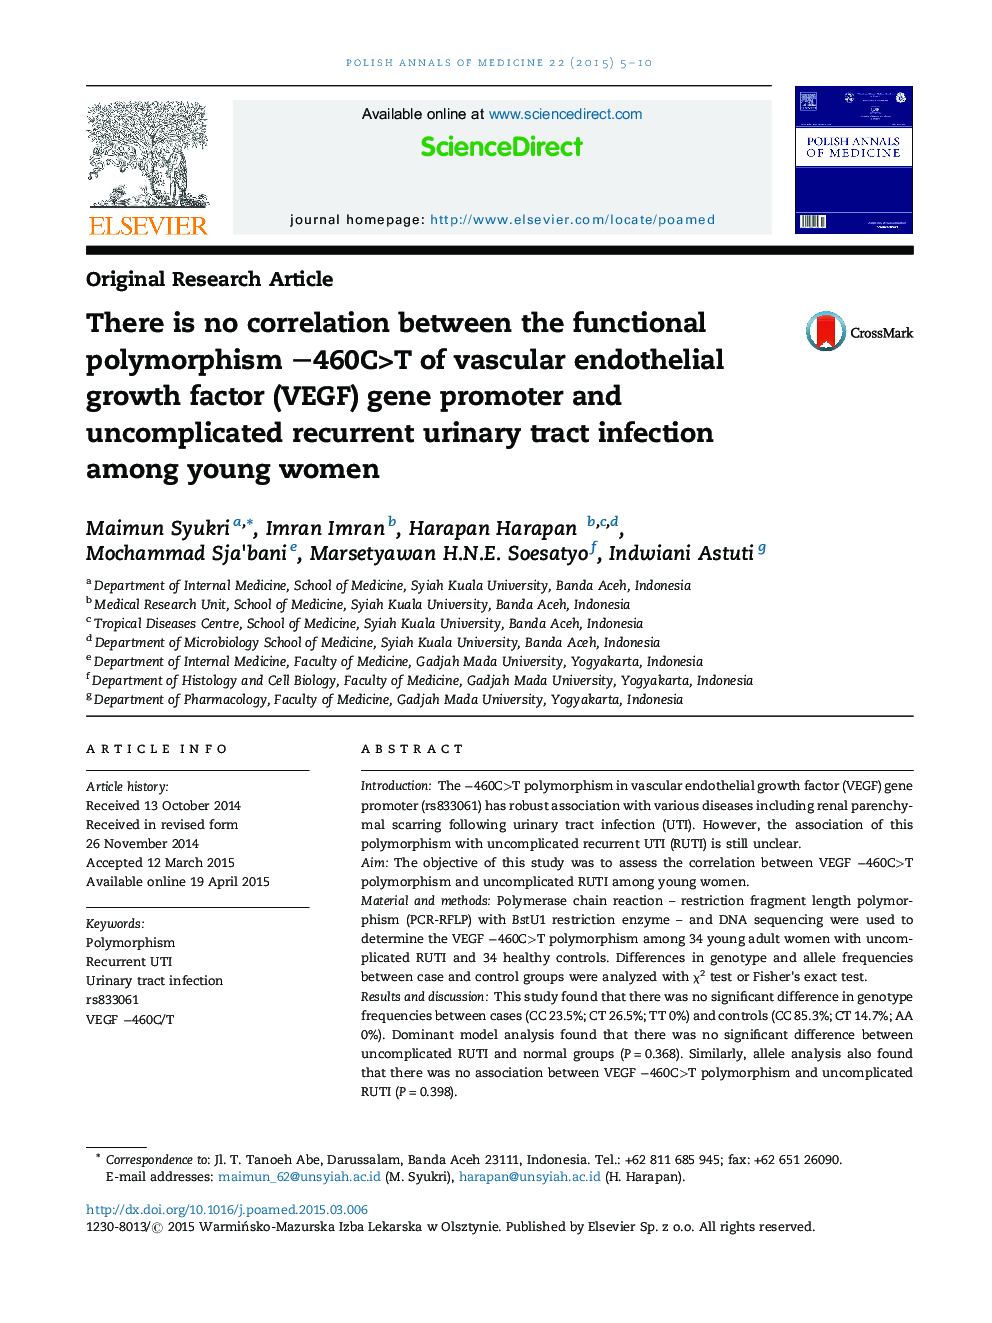 هیچ ارتباطی بین پلی مورفیسم عملکردی -460C> T پروموتور ژن VEGF (VEGF) و عفونت مجاری ادراری بدون عارضه در زنان جوان وجود ندارد